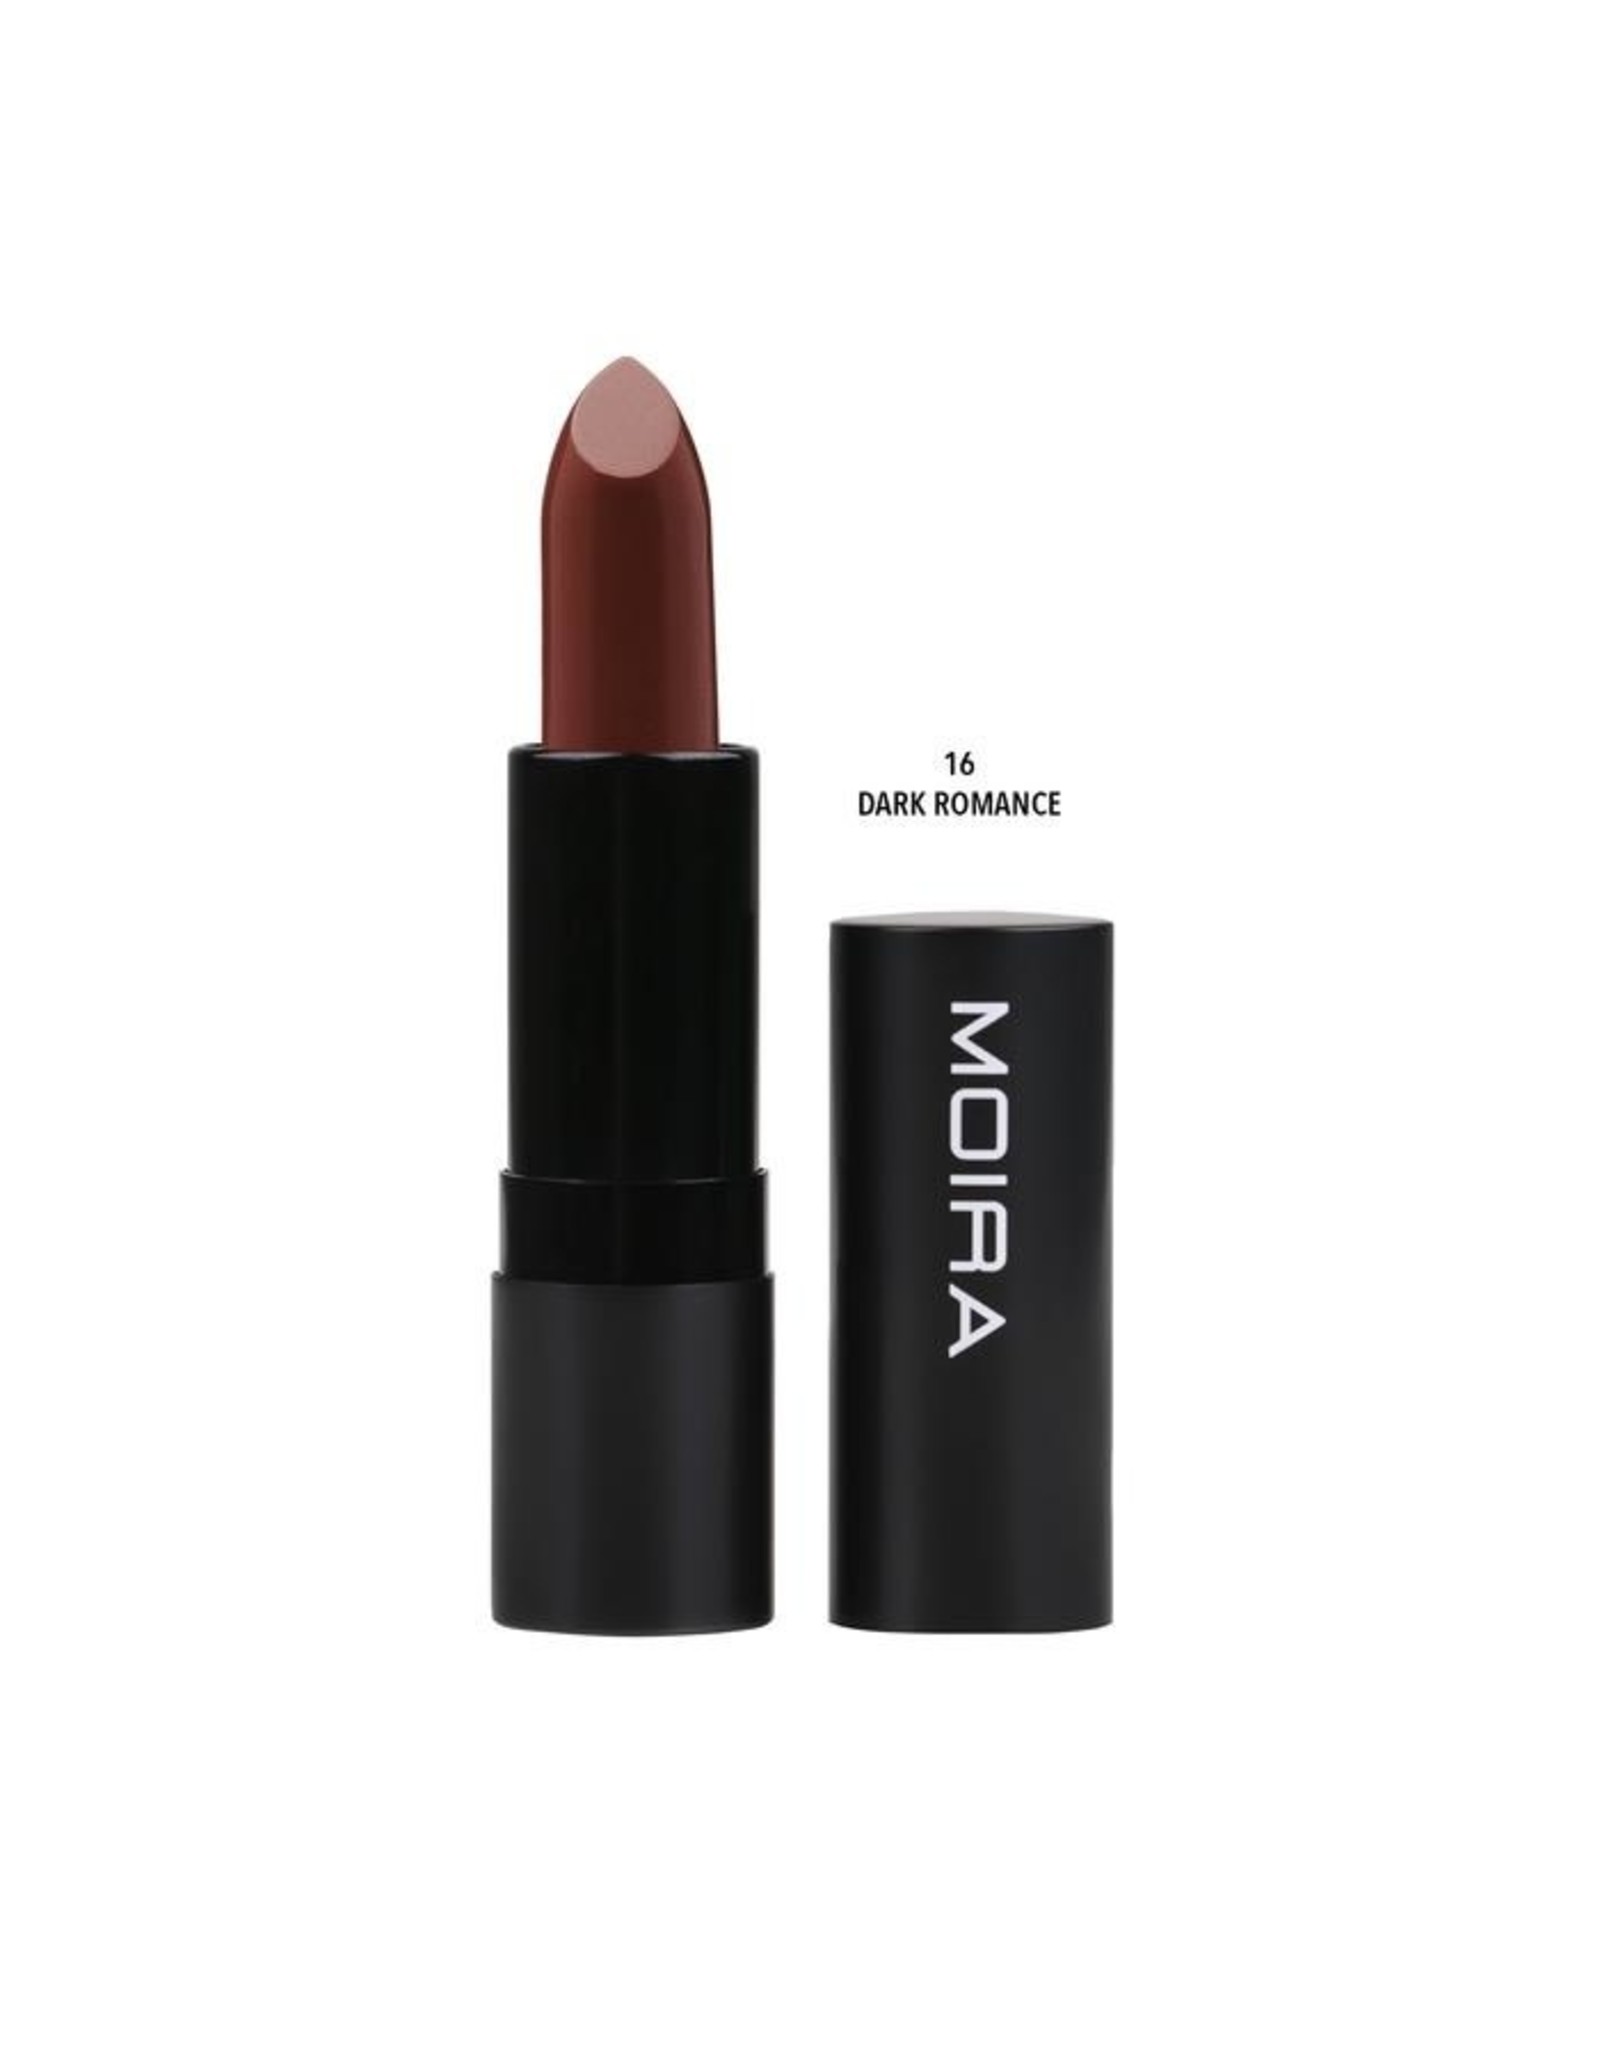 Moira Moira Defiant Lipstick 50% OFF ORIG. PRICE $7.99